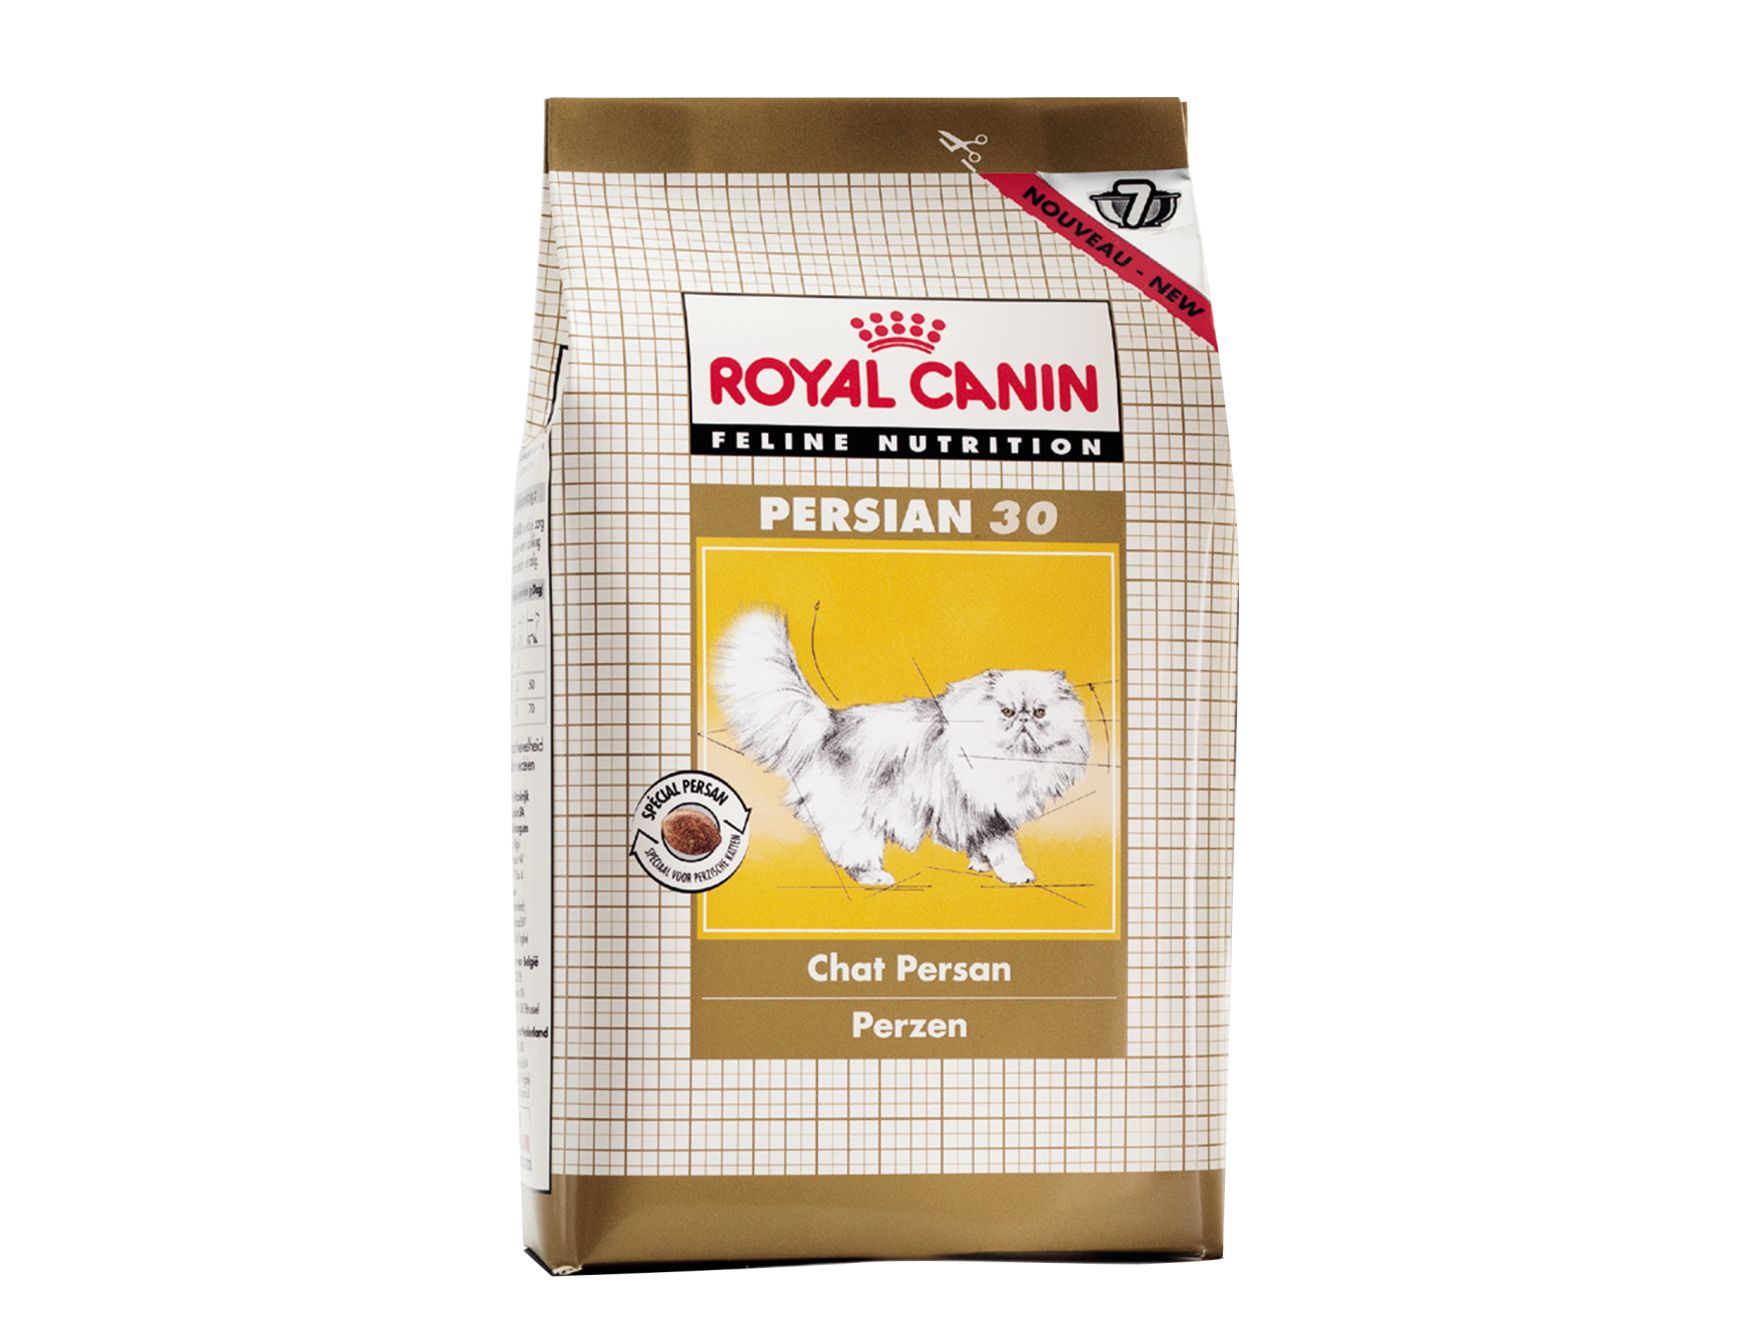 Productpackshot van Royal Canin Persian